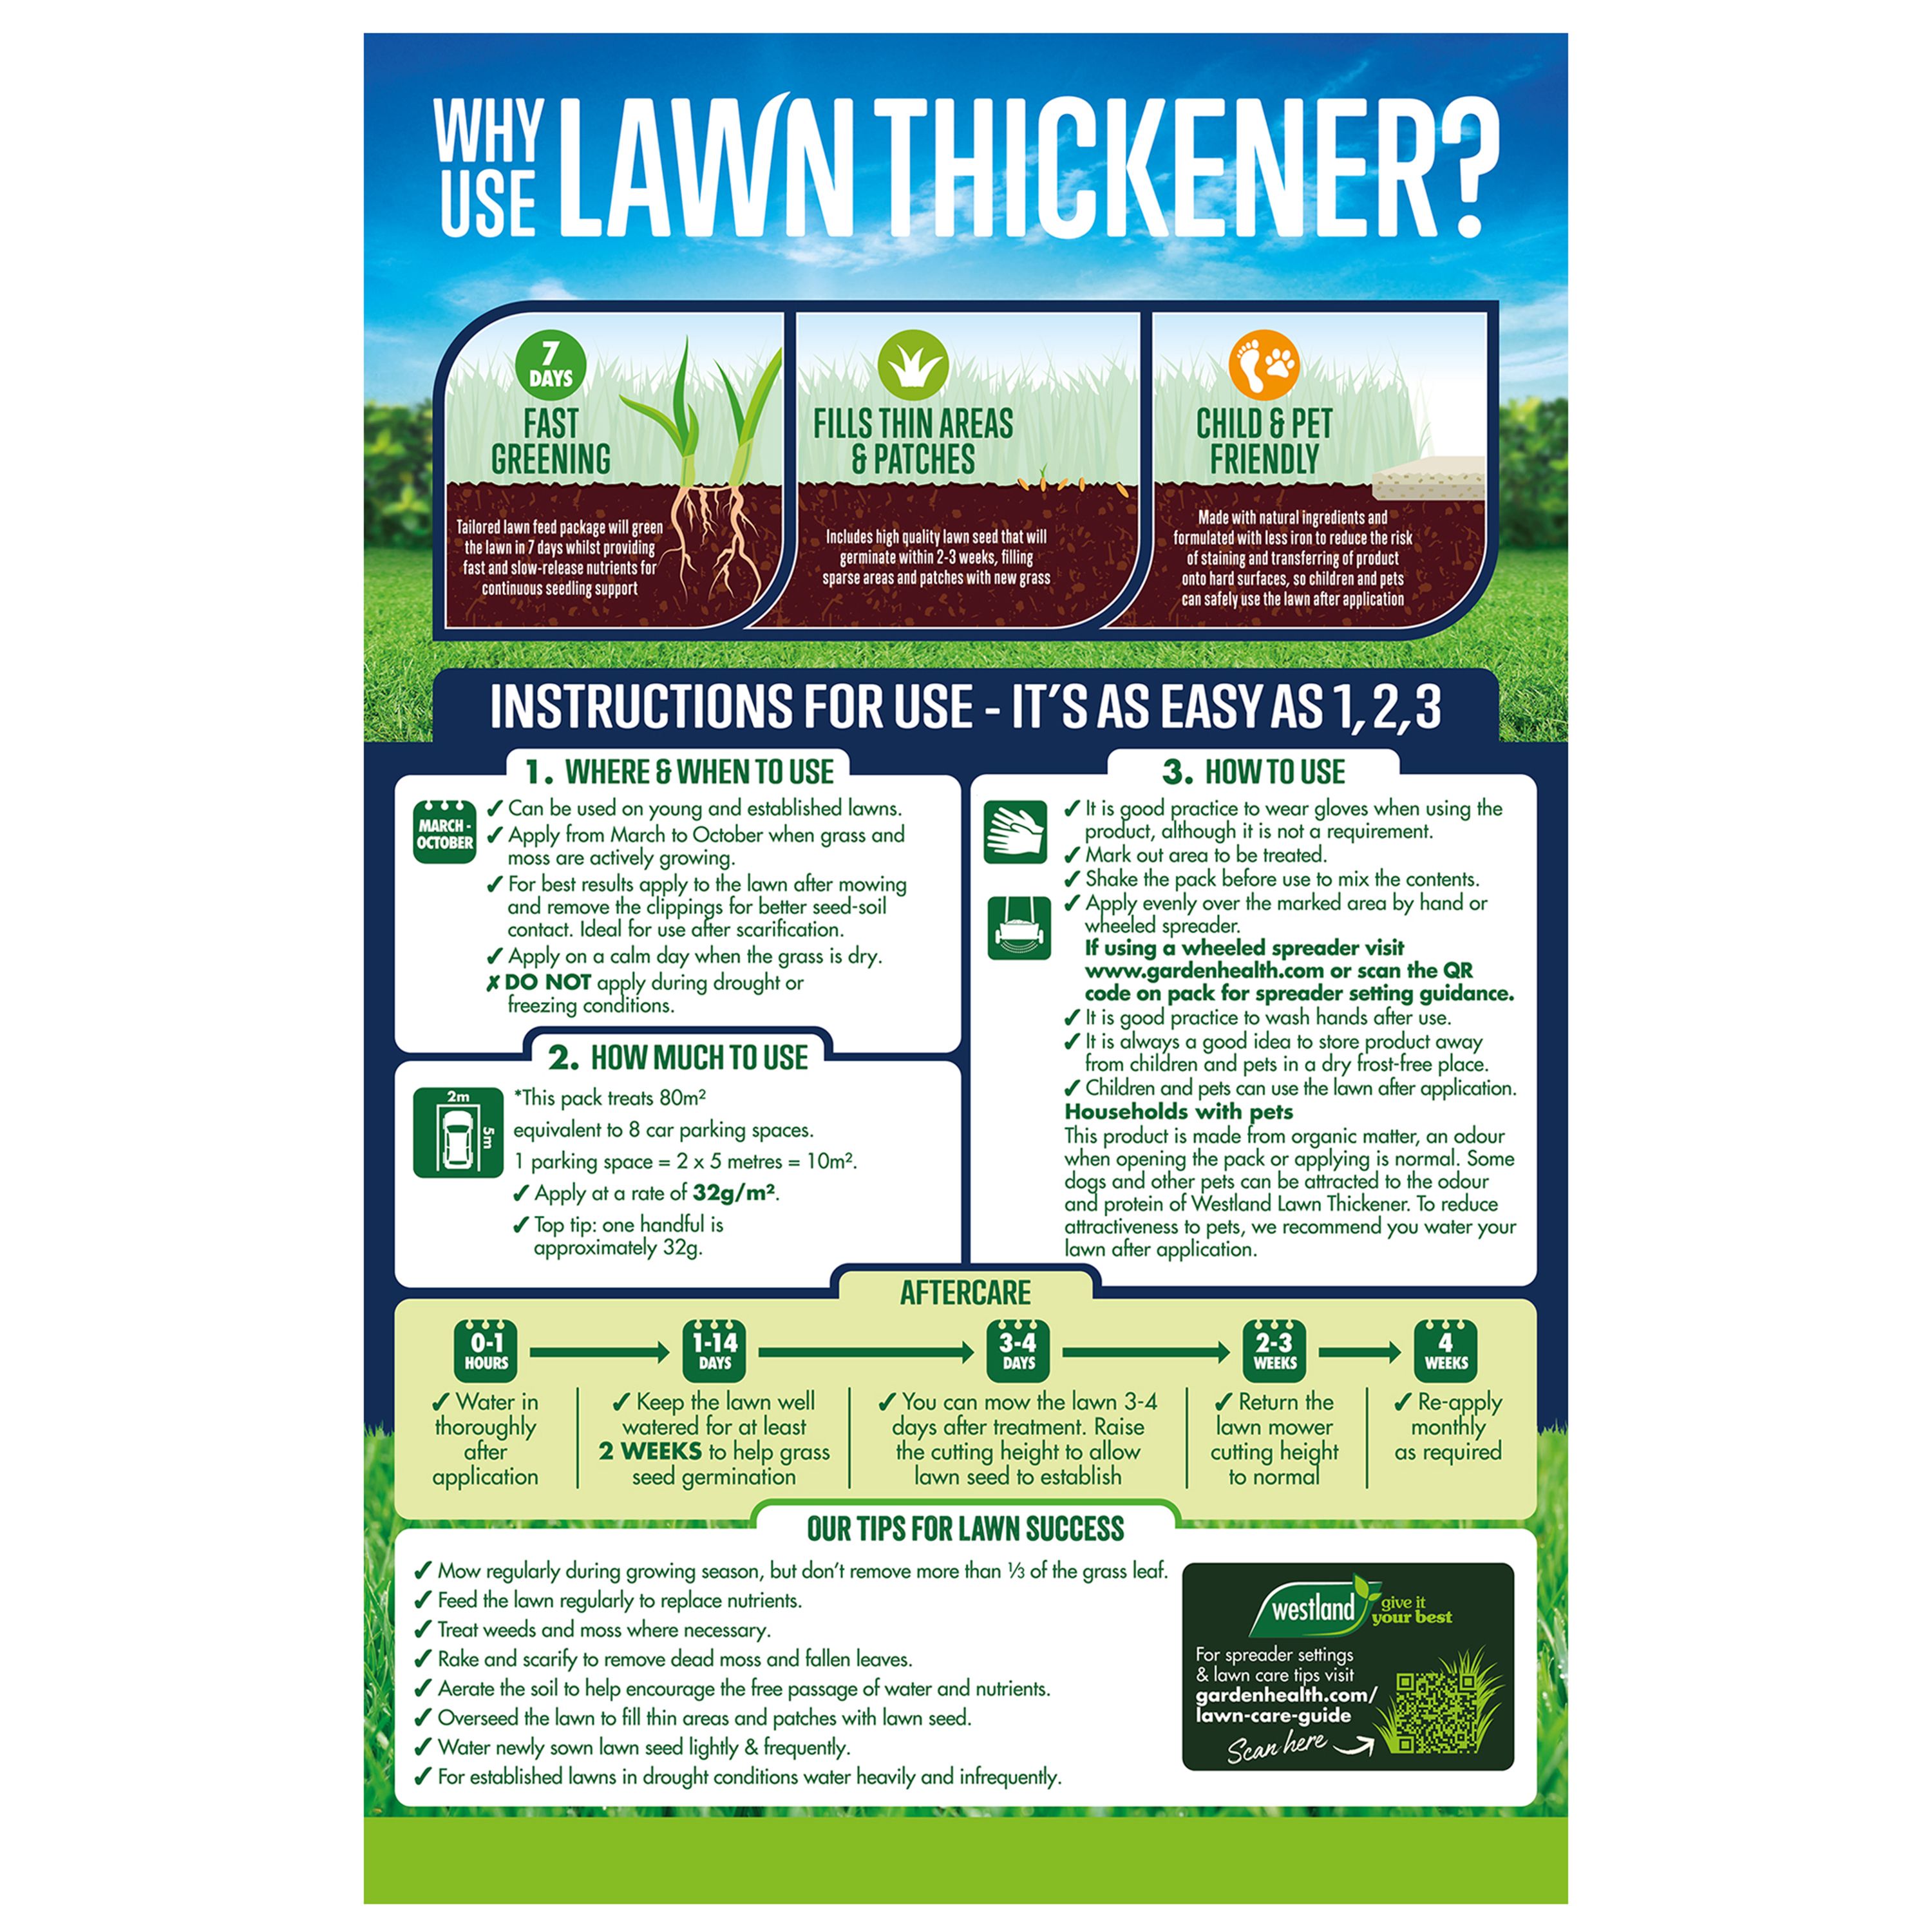 Westland Lawn Care Lawn feed Granules Organo-mineral fertiliser with lawn seed 80m² 2.56kg